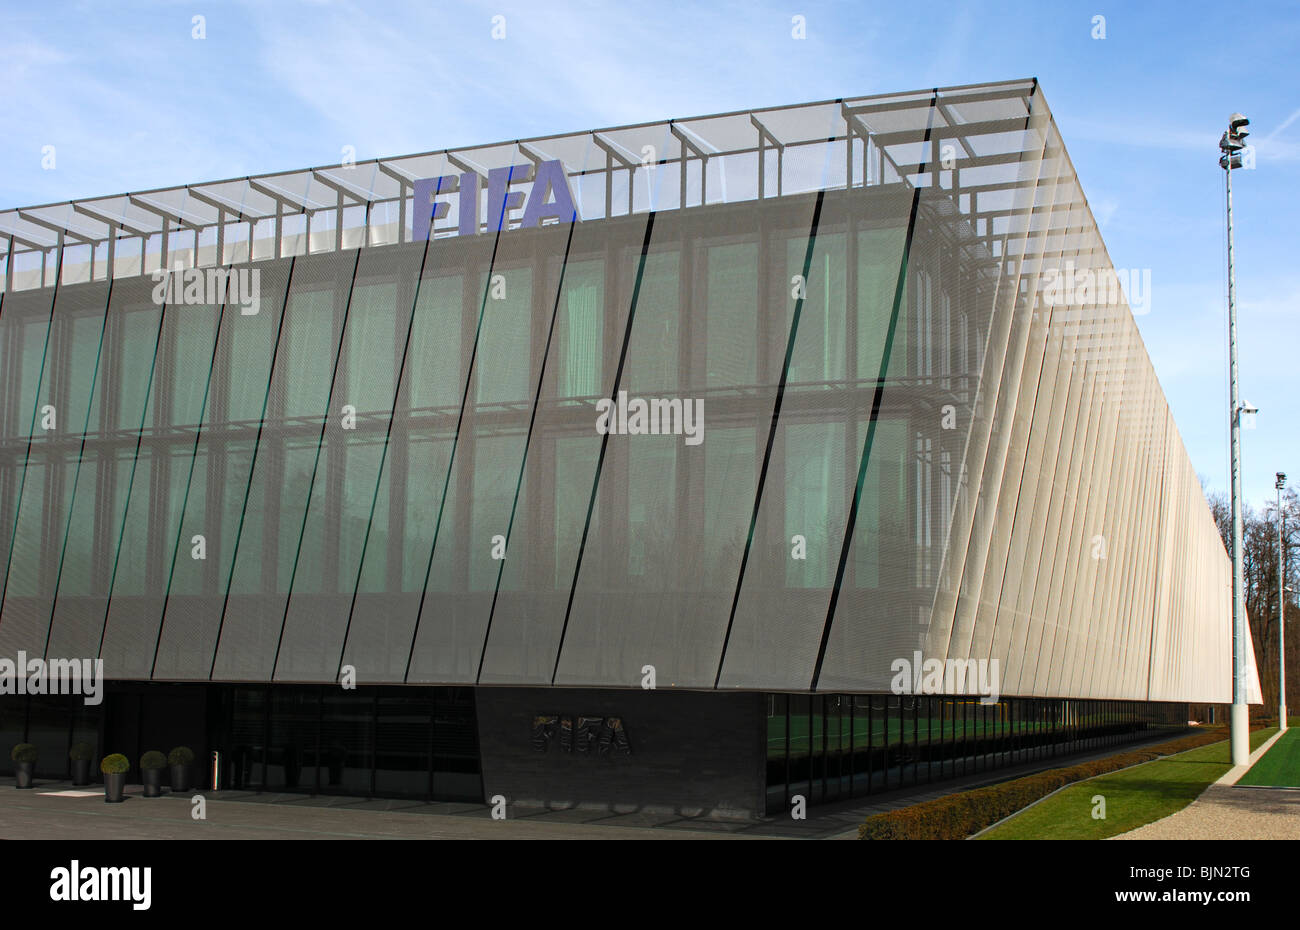 Accueil de la FIFA, siège de la Fédération Internationale de Football Association, la FIFA, Zurich, Suisse Banque D'Images